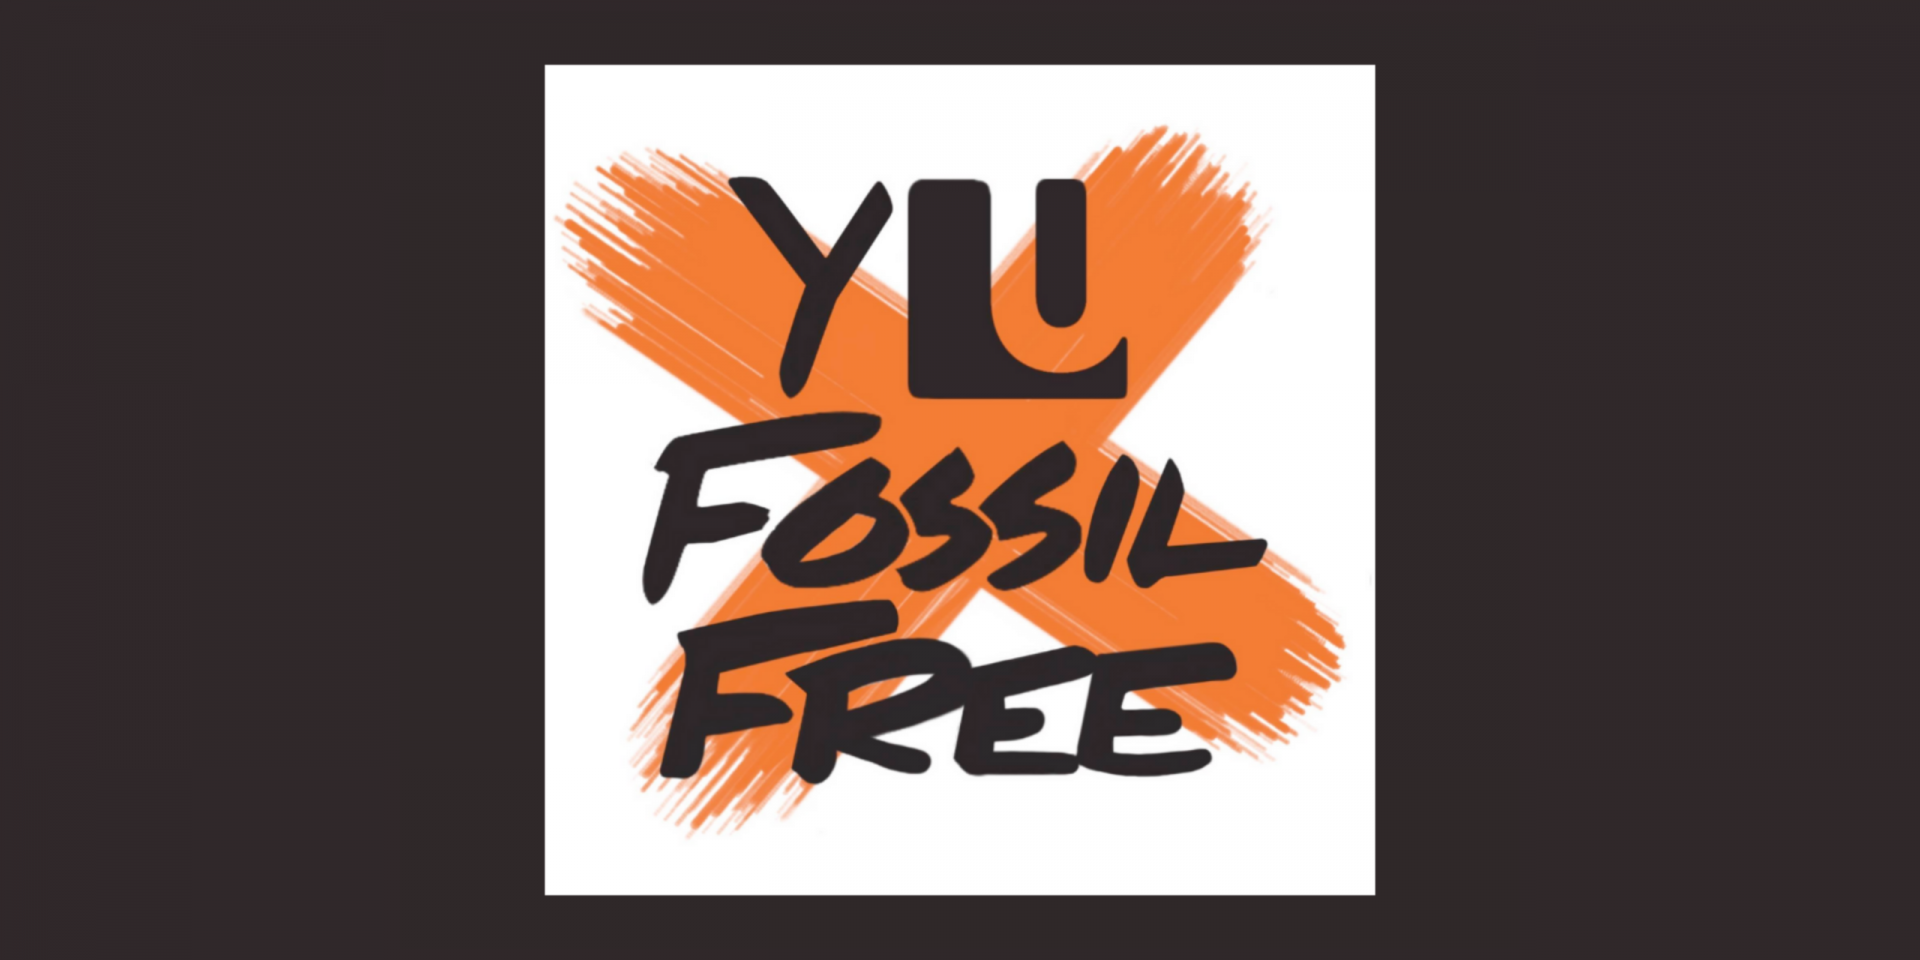 YU Fossil Free